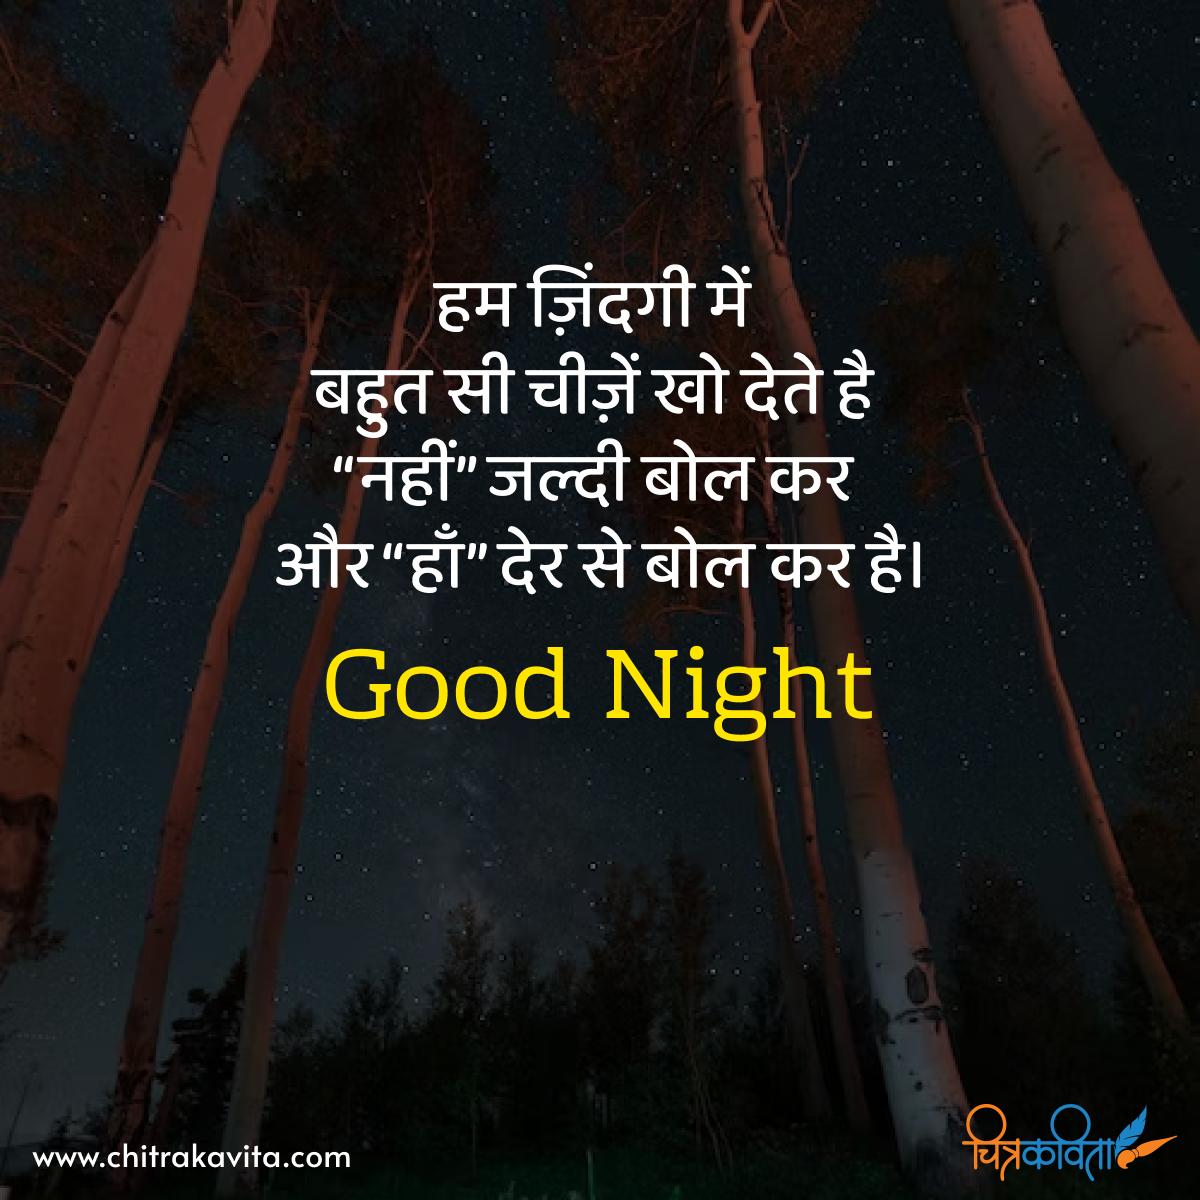 hindi good night status, good night quotes in hindi, hindi good night wishes, hindi quotes, badlav, emotional hindi quotes, sad, sad status in hindi